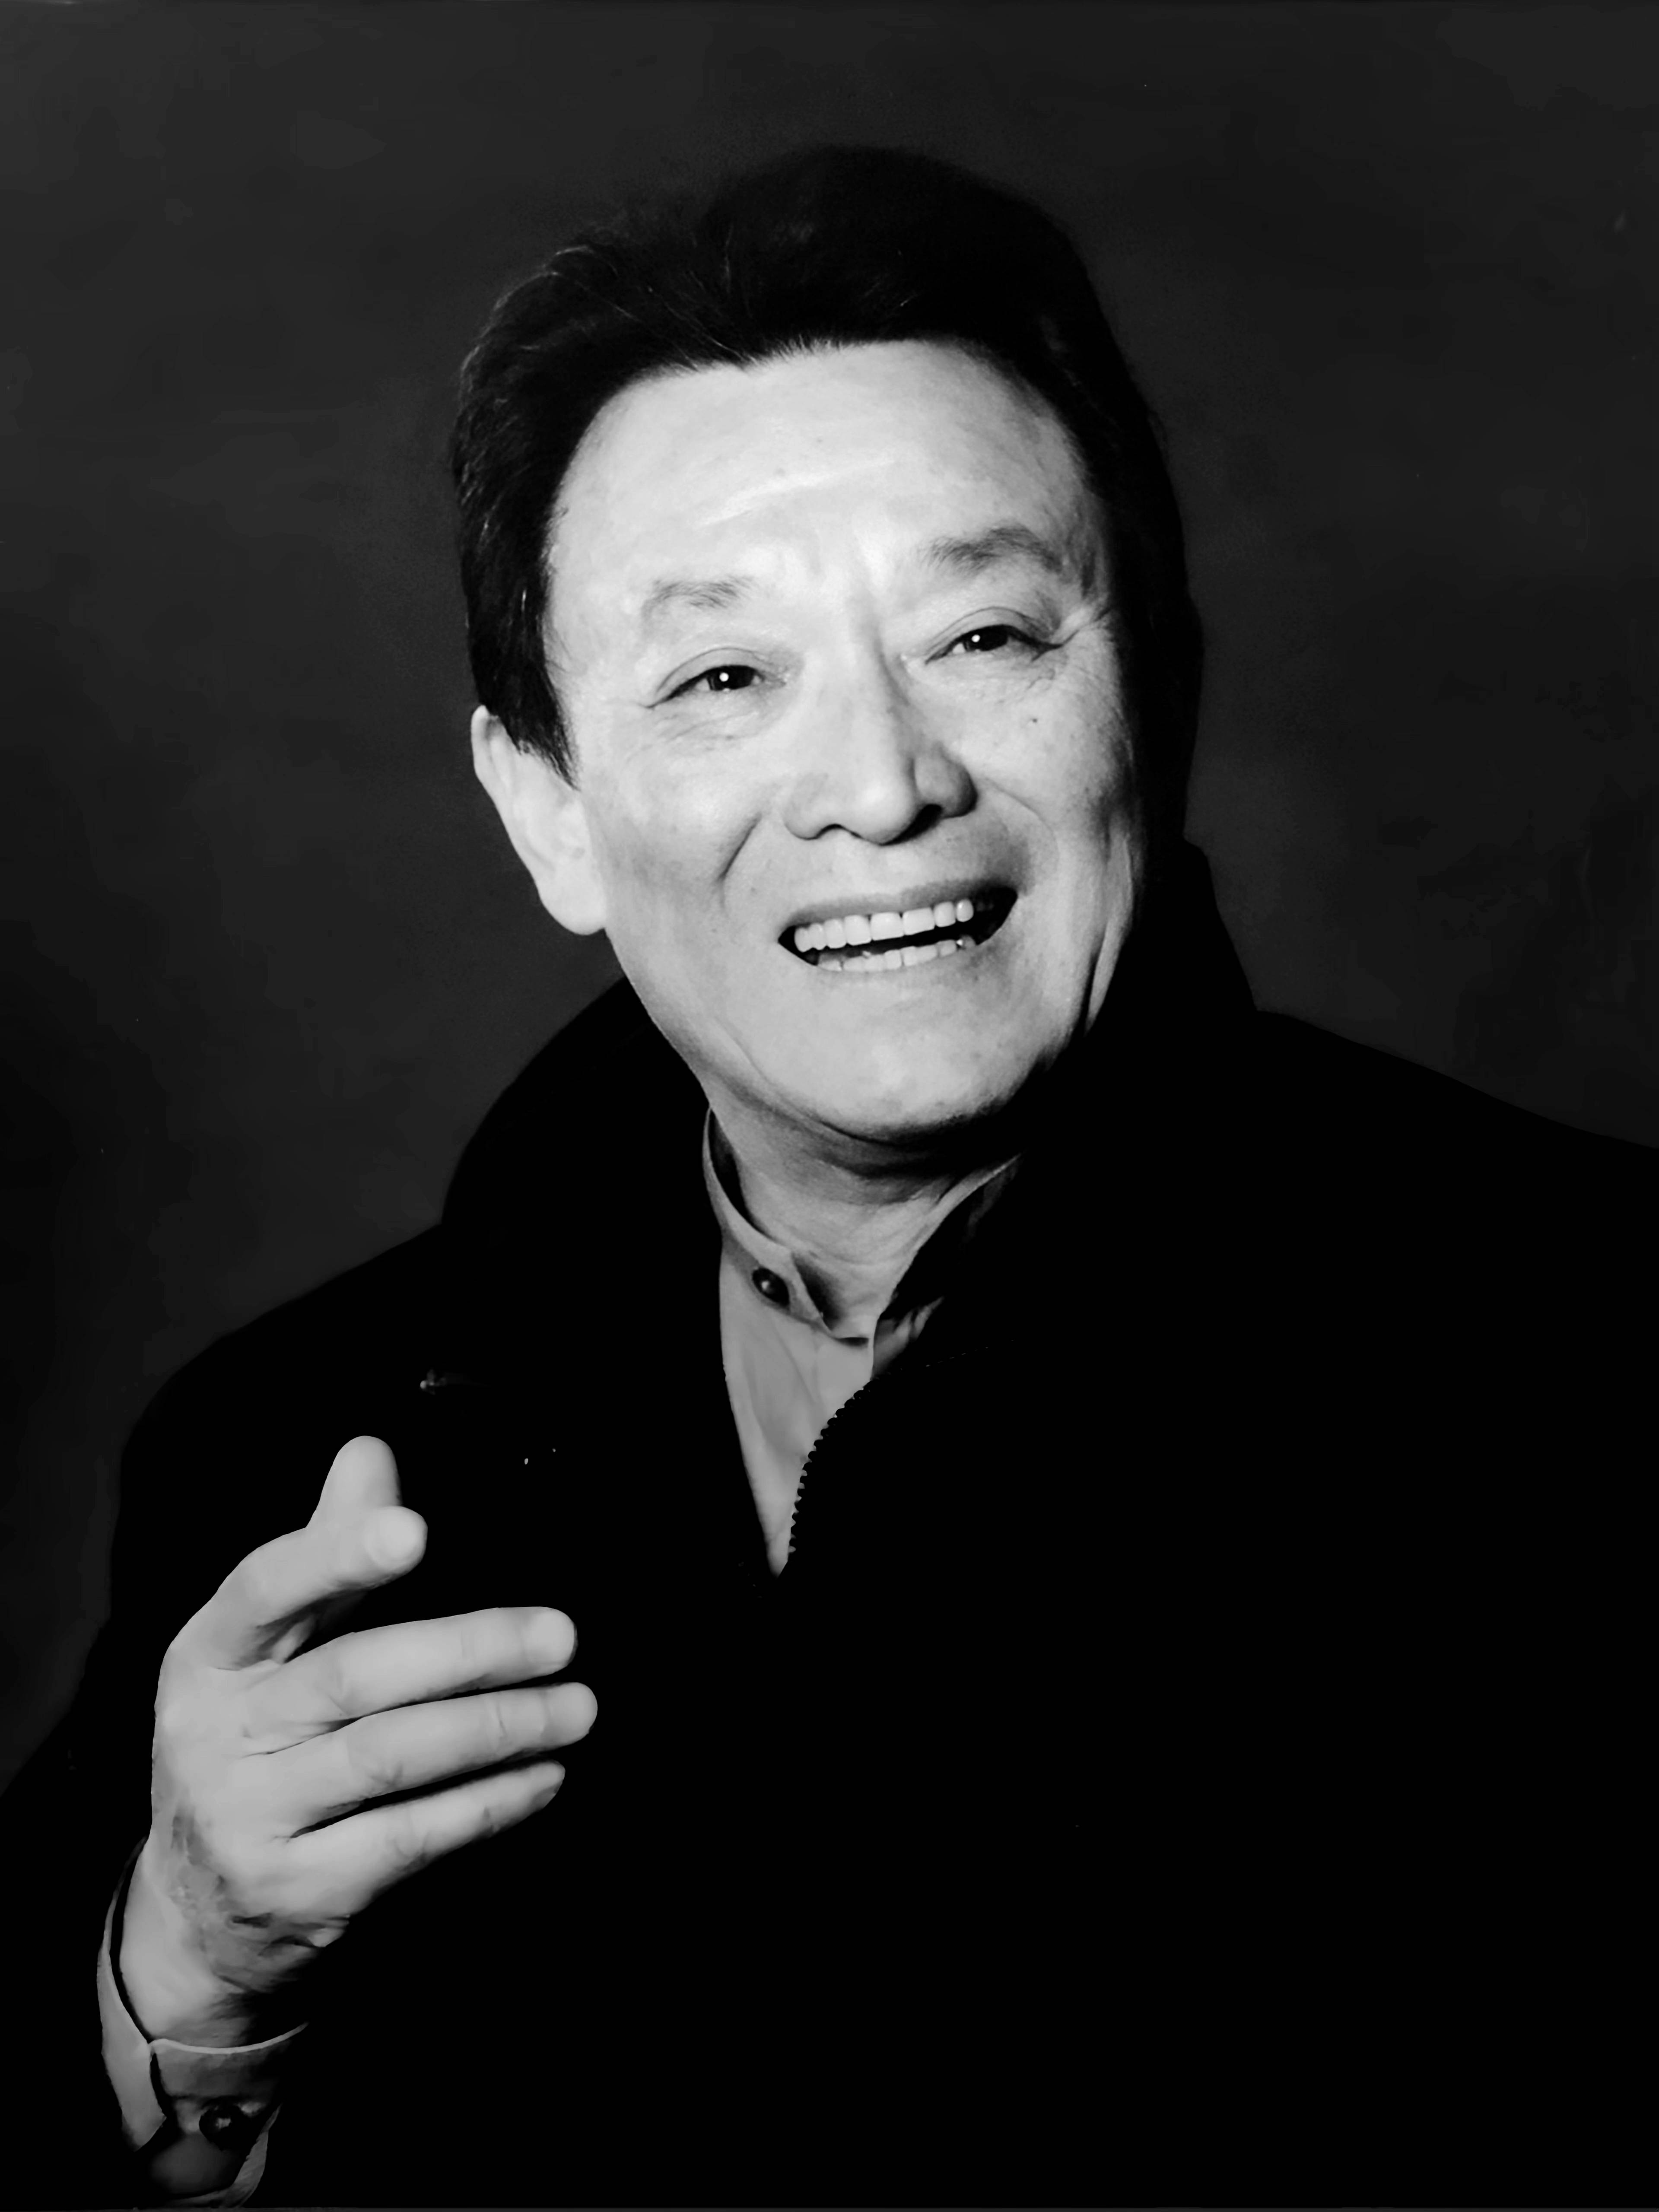 表演艺术家石维坚逝世,享年89岁,曾主演电影《天云山传奇》